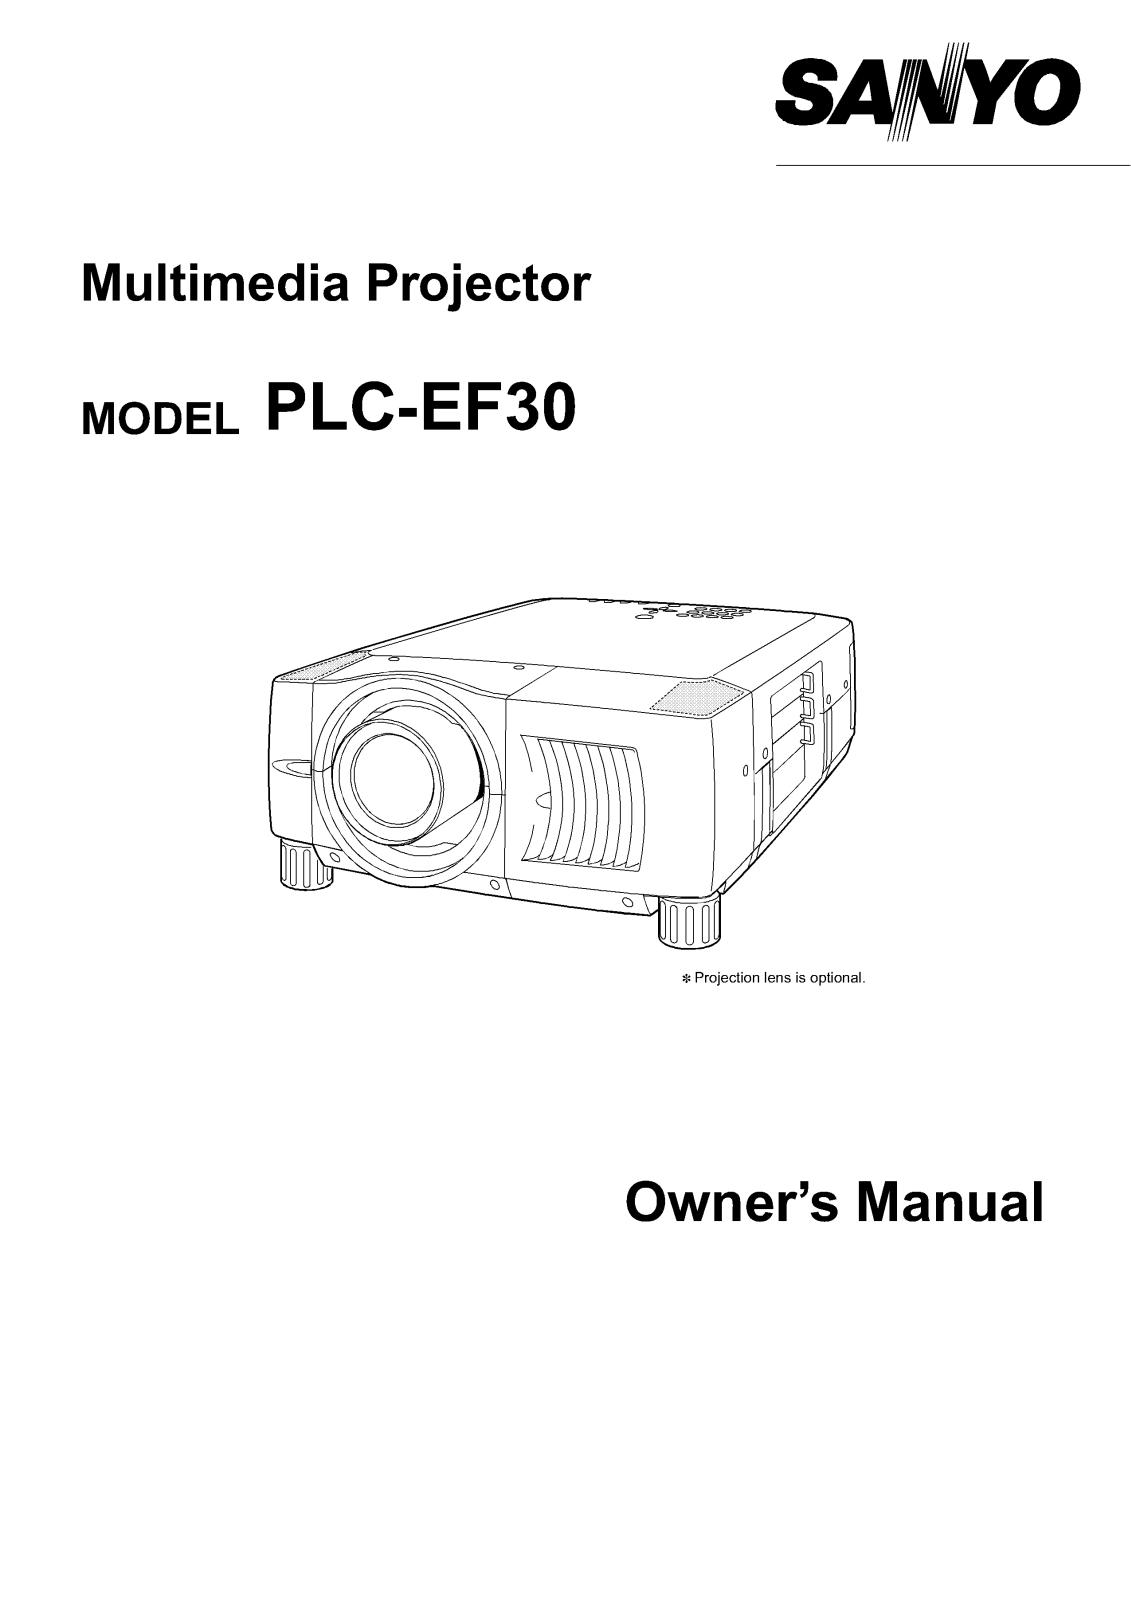 Sanyo PLC-EF30 Instruction Manual